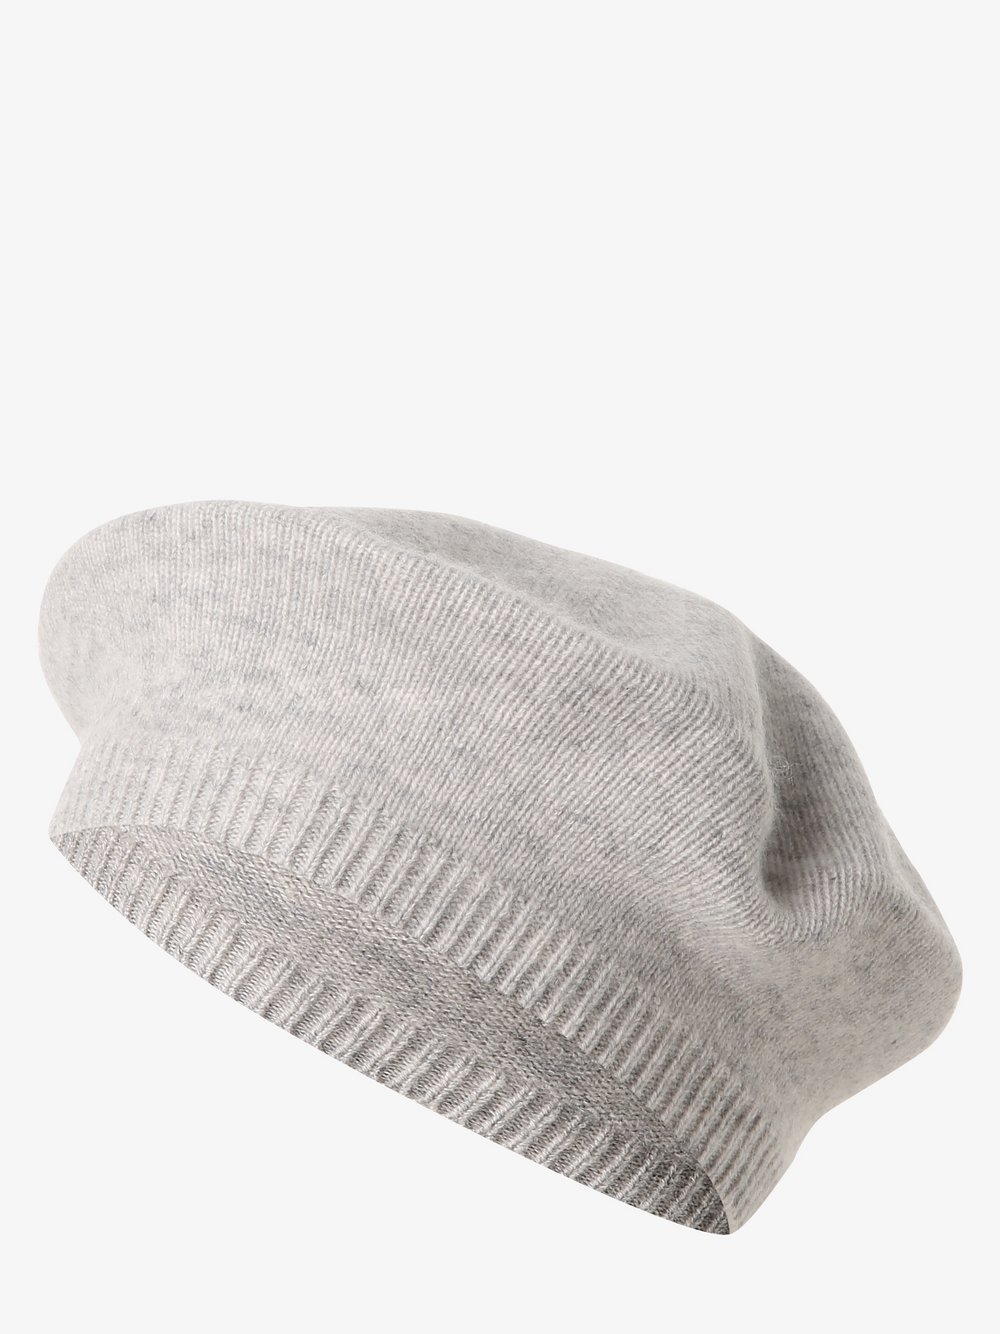 Apriori - Damska czapka z czystego kaszmiru, szary